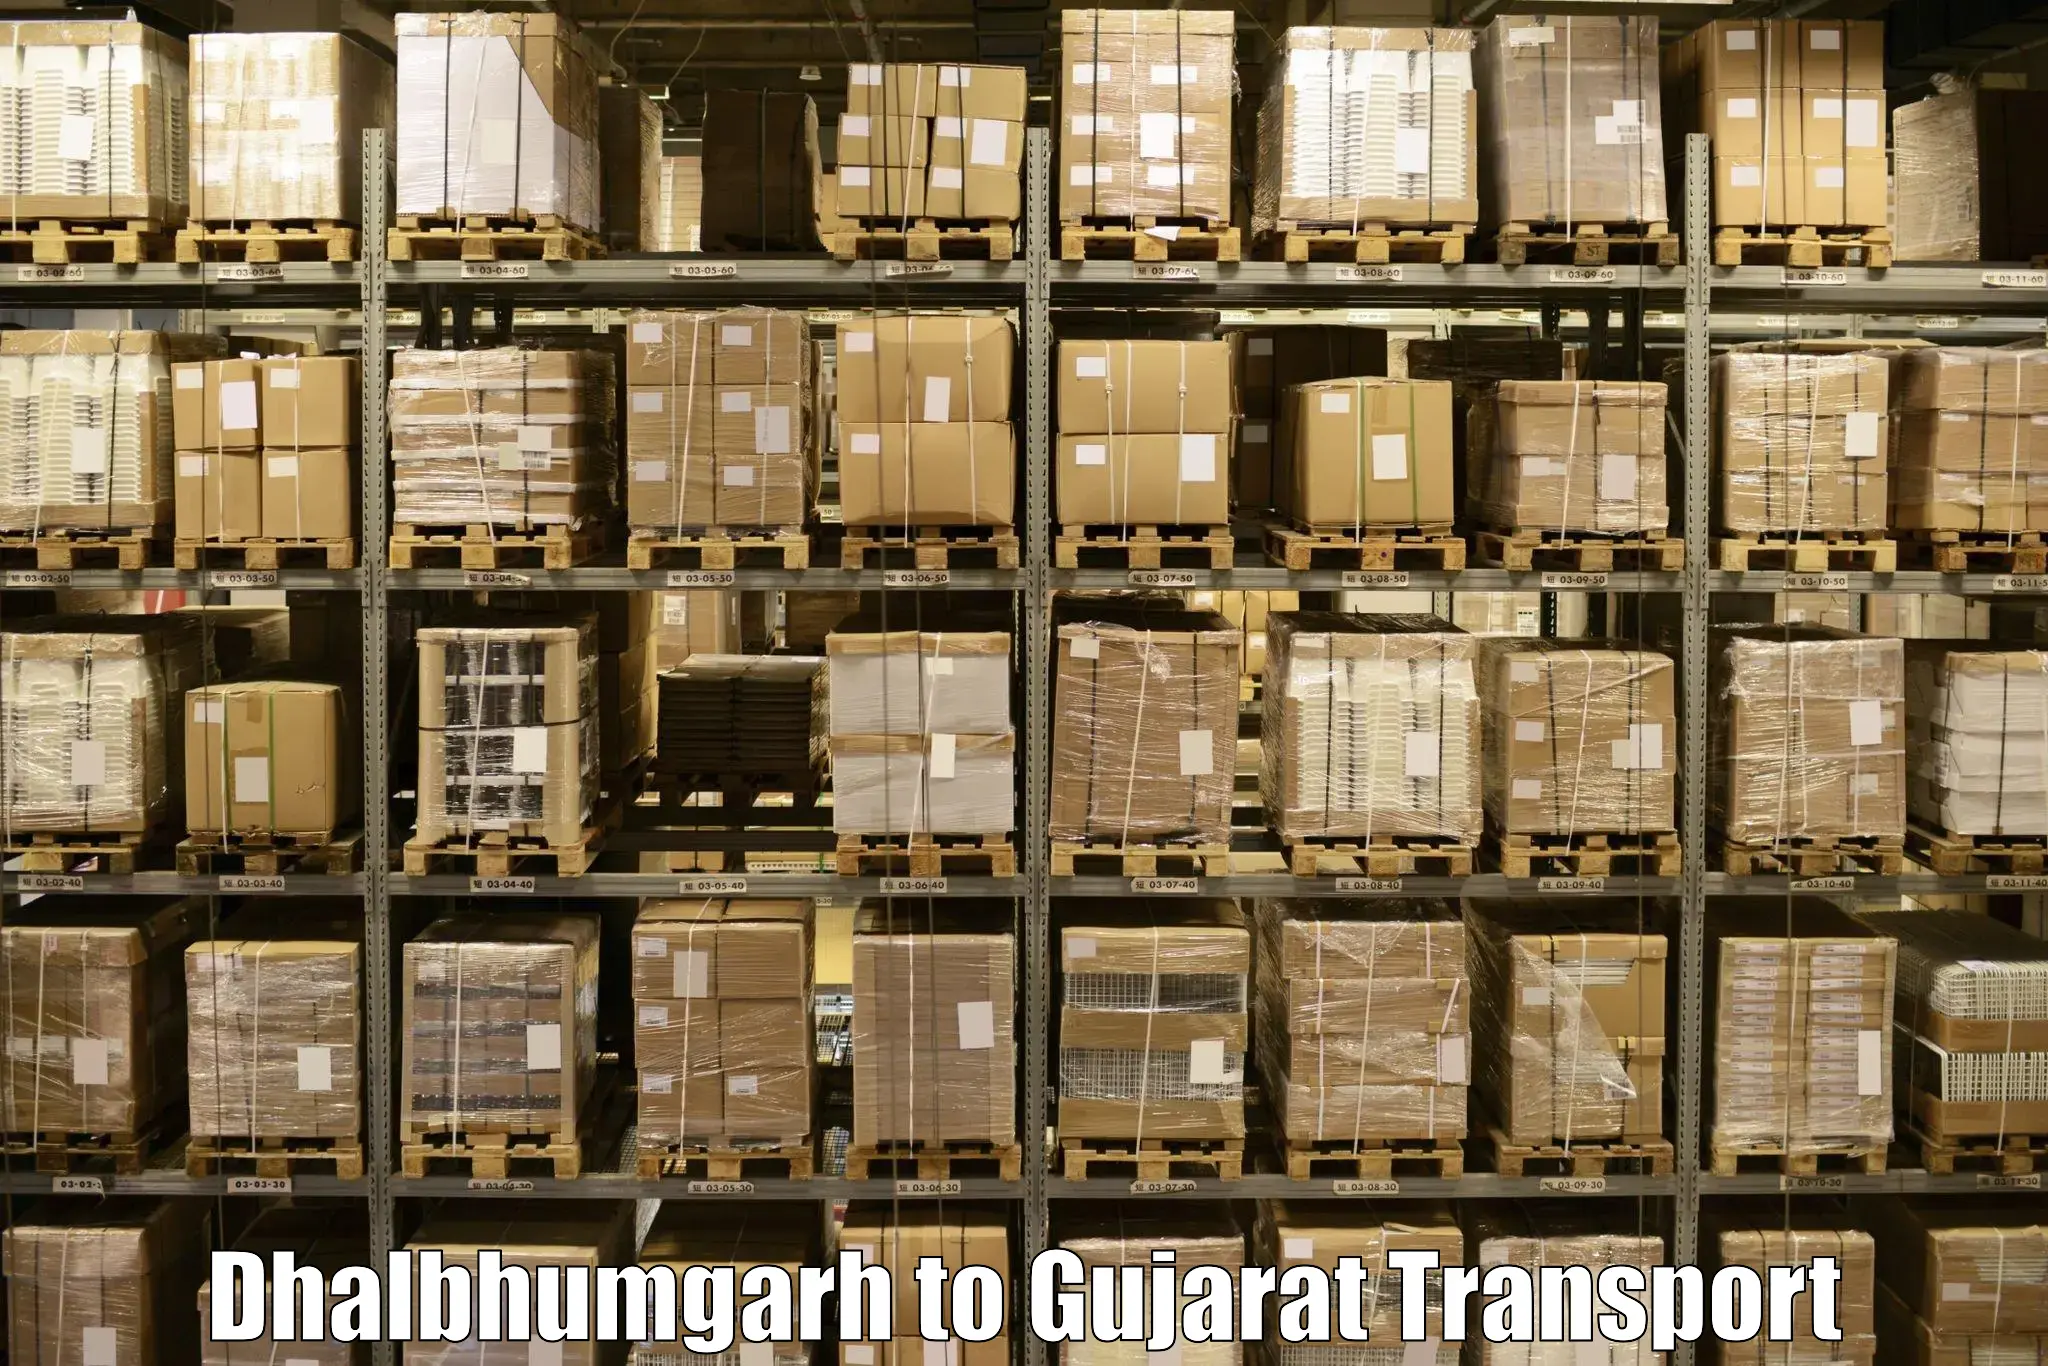 Nearest transport service Dhalbhumgarh to IIIT Surat